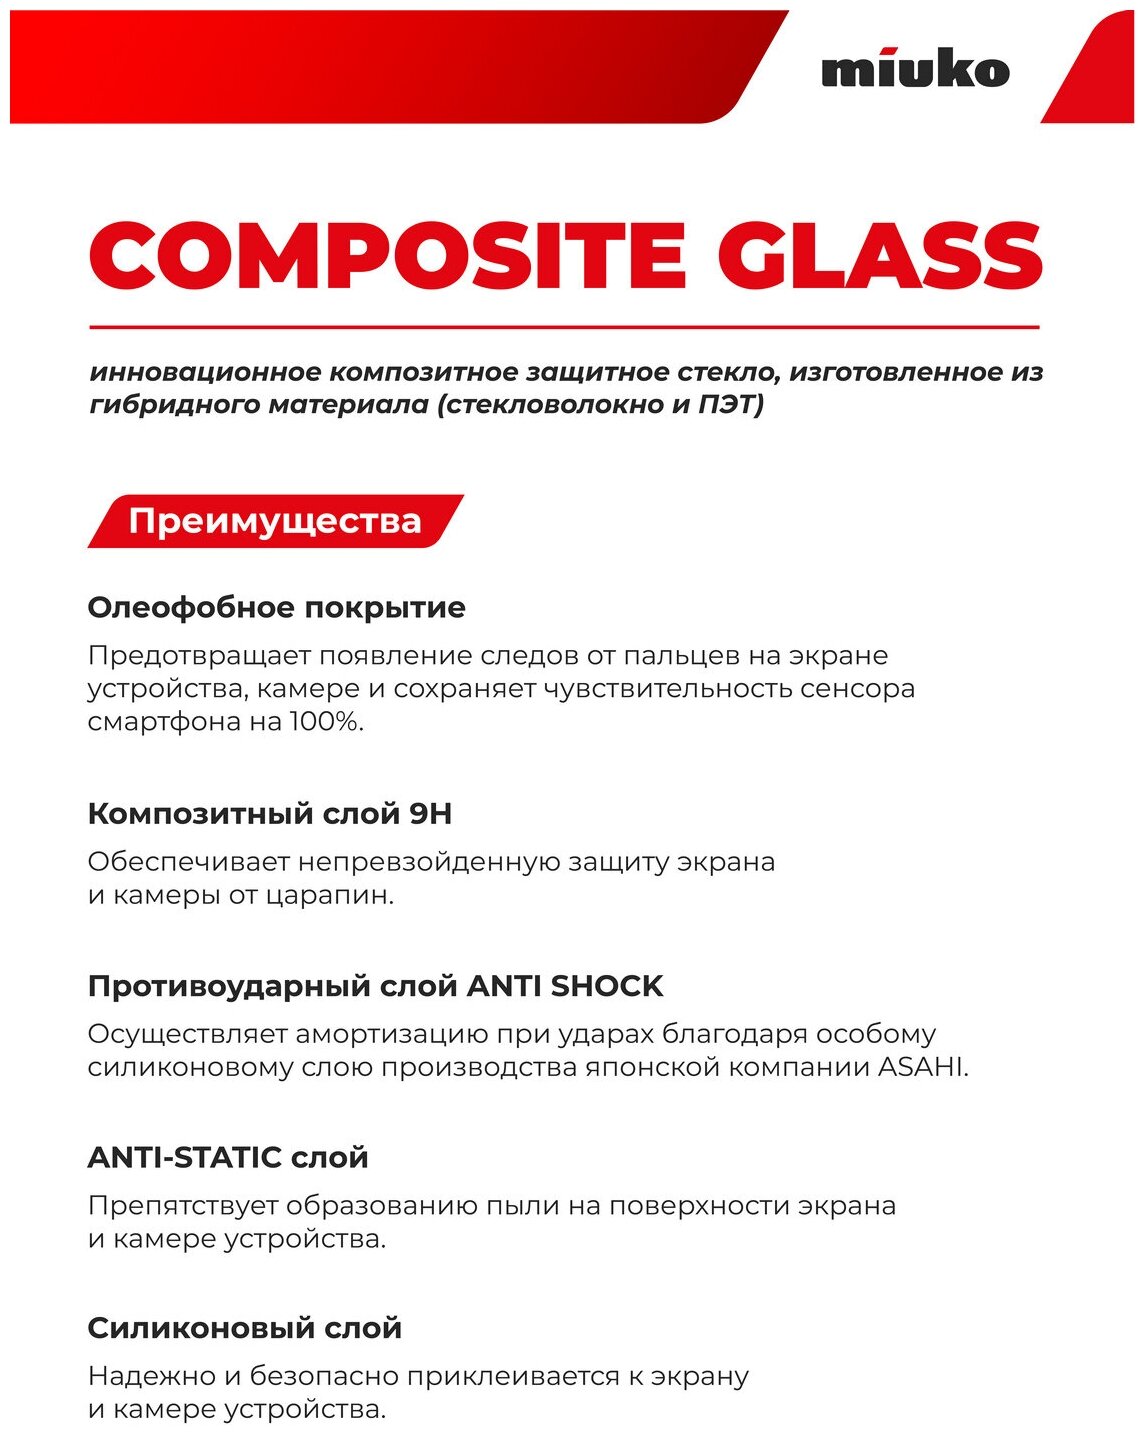 Защитное стекло на часы 40 мм (универсальное круглое), гибридное - пленка + стекловолокно, прозрачное тонкое Hybrid Glass комплект 2 шт, Miuko